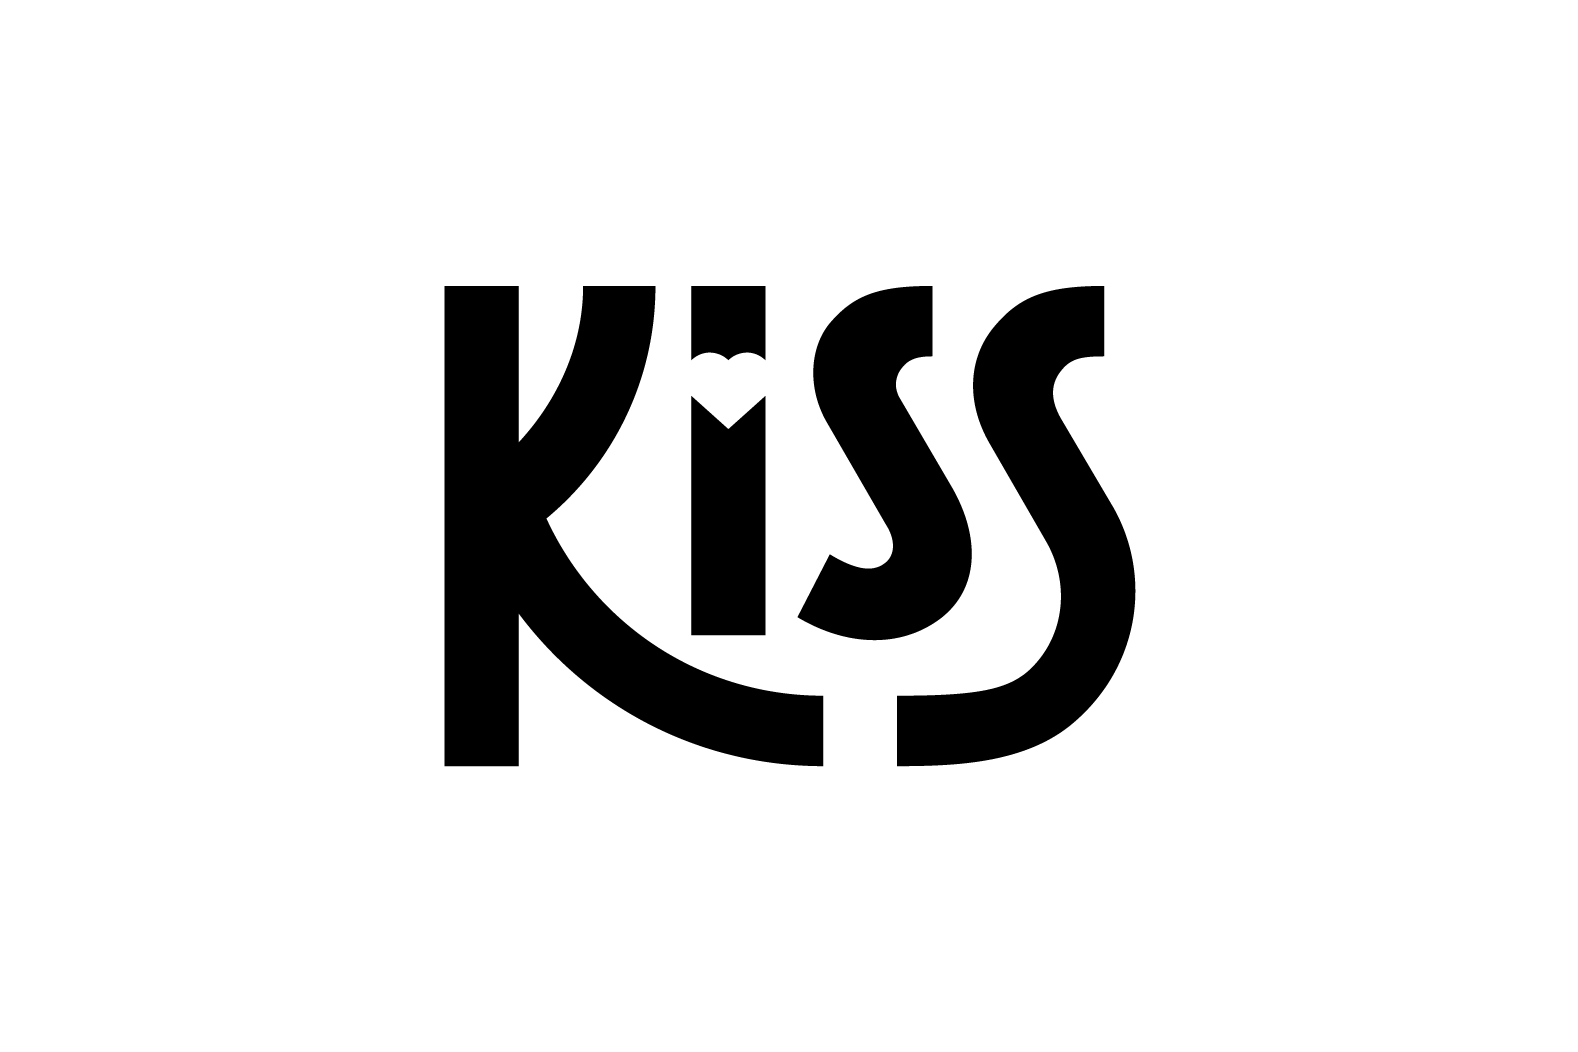 kiss-logo